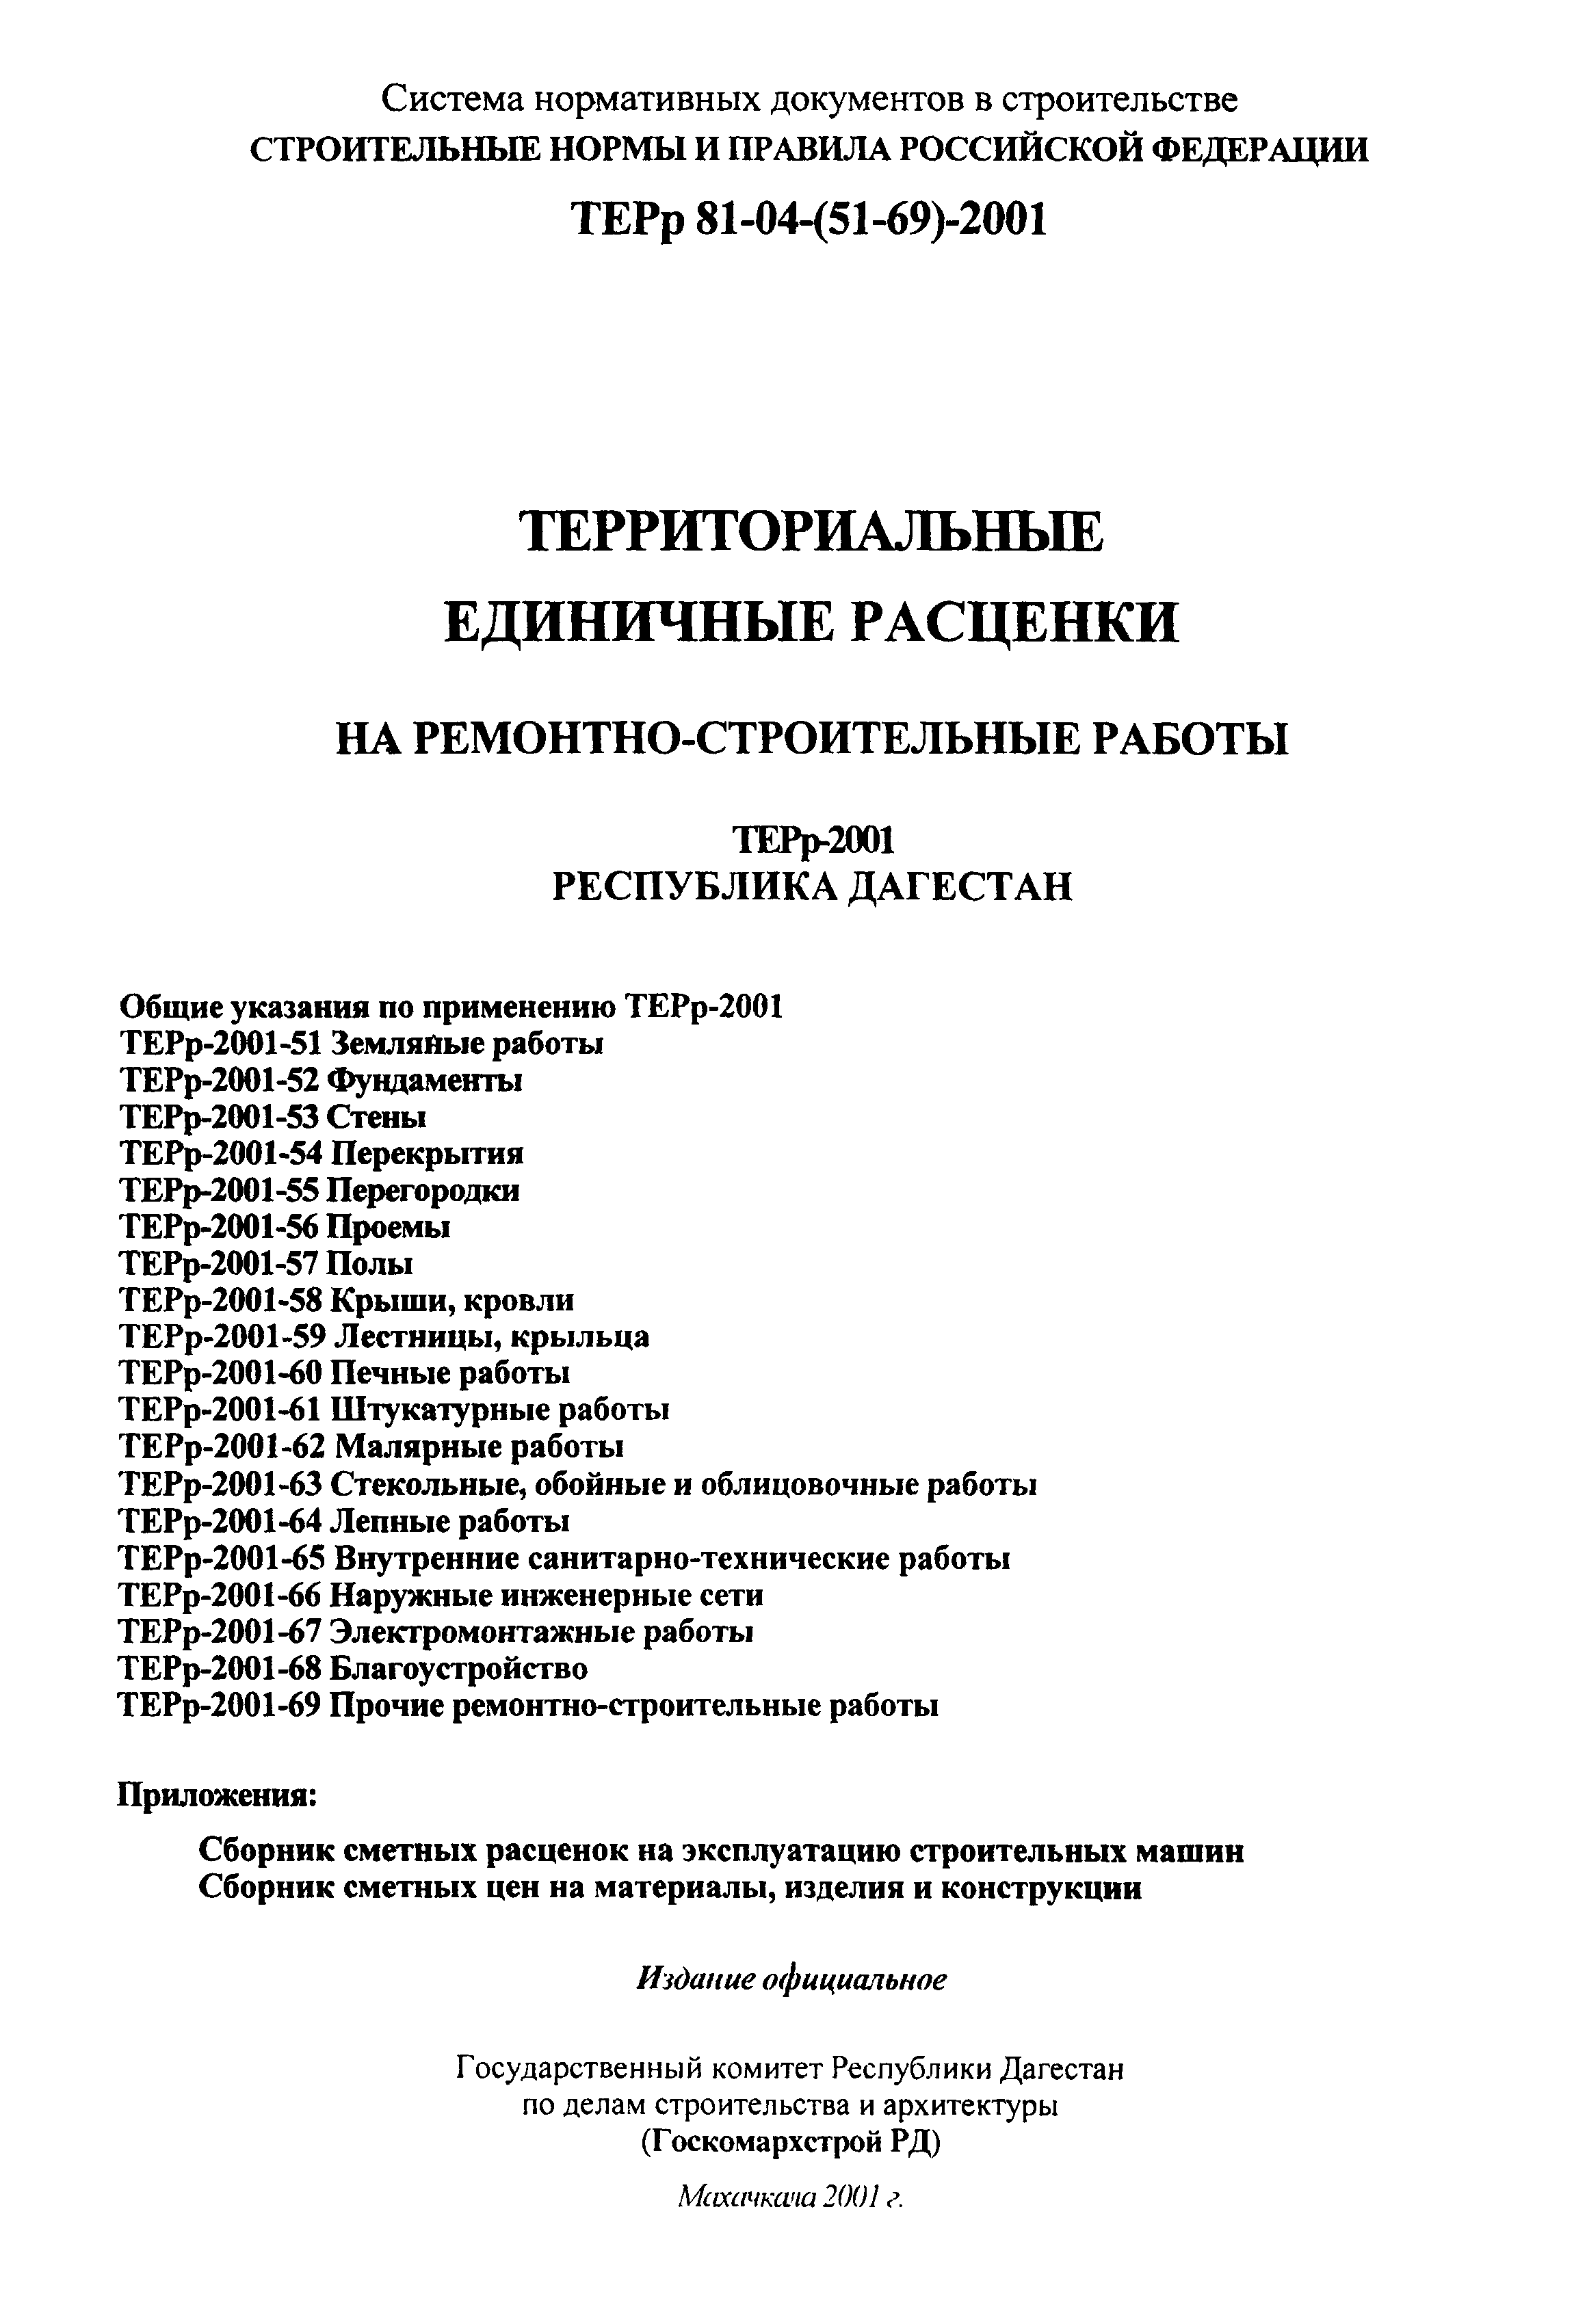 ТЕРр Республика Дагестан 2001-65